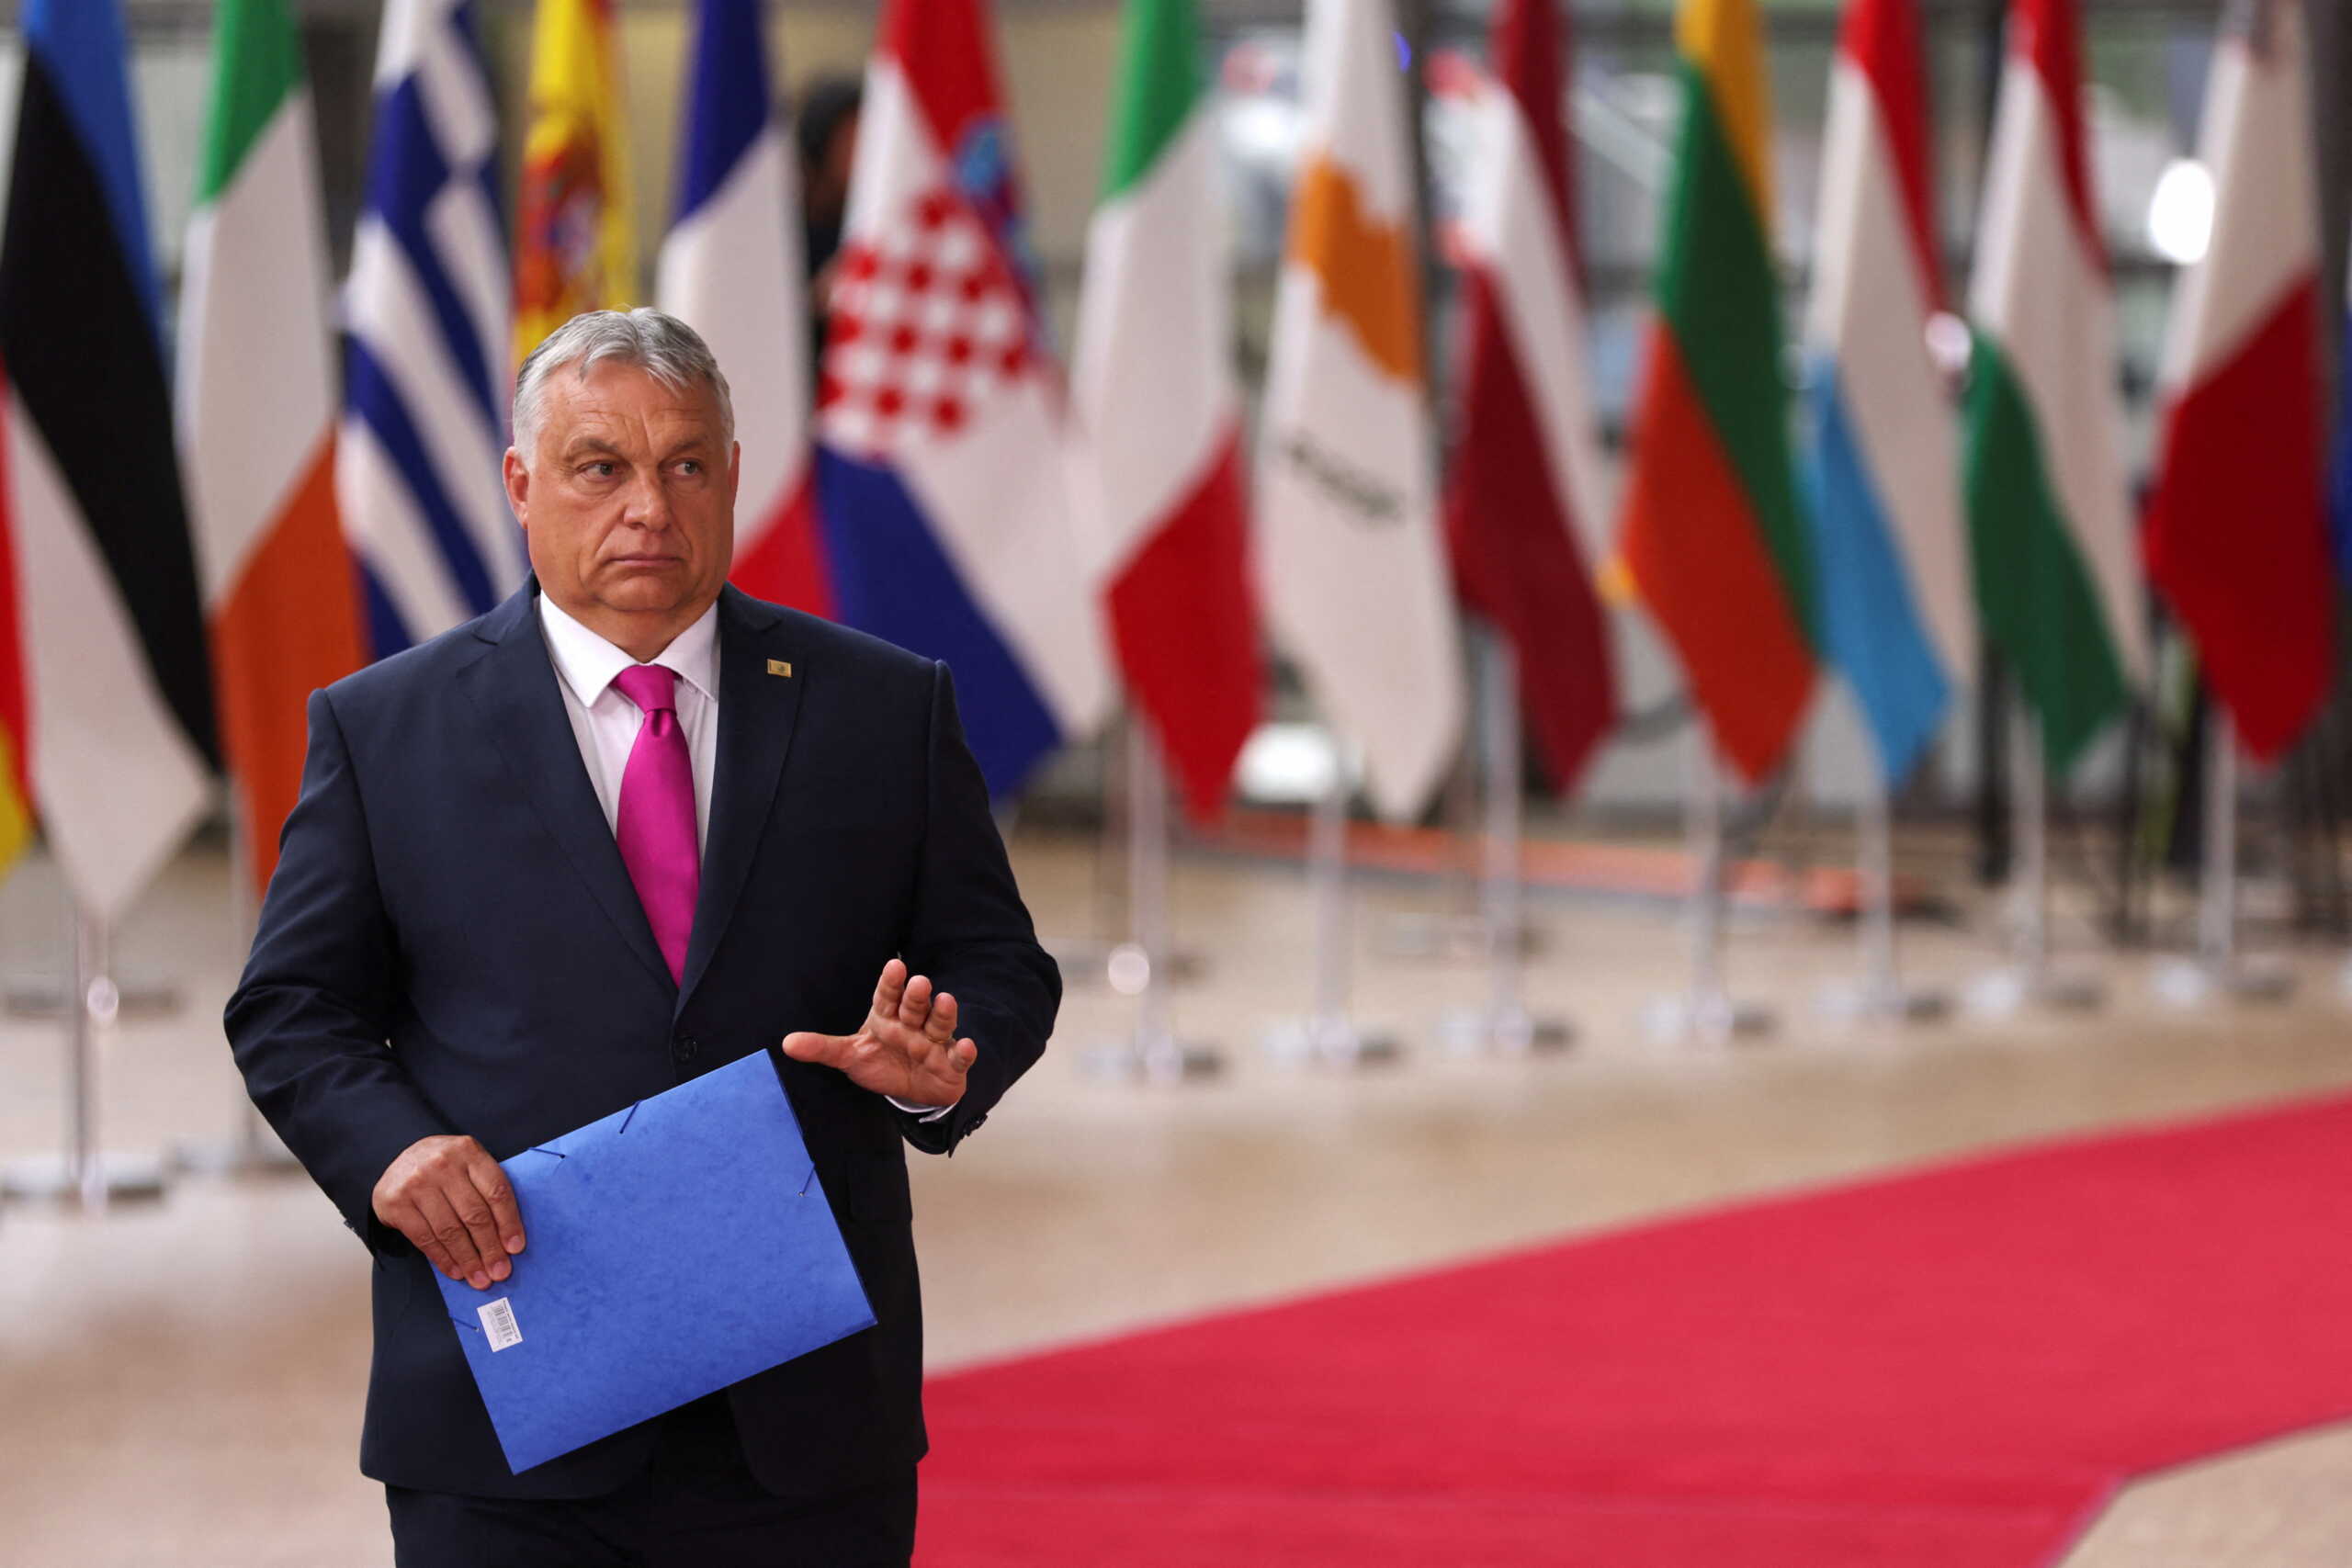 Σύνοδος Κορυφής – Politico: Ύστατη προσπάθεια να πειστεί η Ουγγαρία – Νέο κείμενο συμπερασμάτων